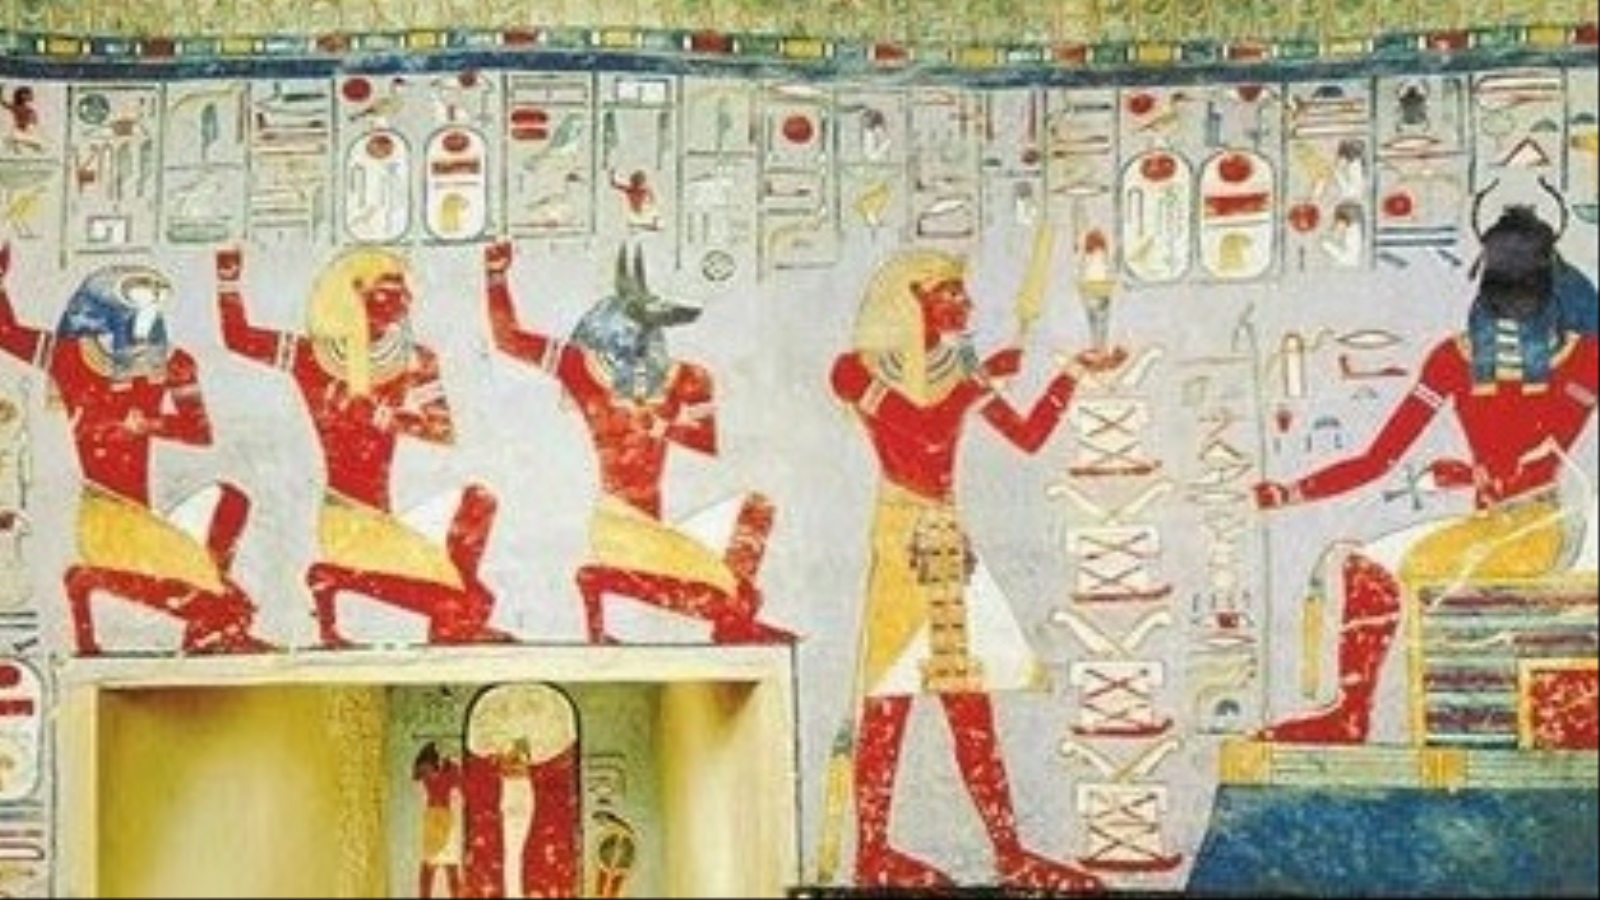 من الأعياد ذات الأهمية الكبيرة عند المصريين القدماء ما يُعرف بـ عيد (حب سد) أو العيد الثلاثيني، وفيه يتم الاحتفال بانقضاء العام الثلاثين لارتقاء الملك على العرش